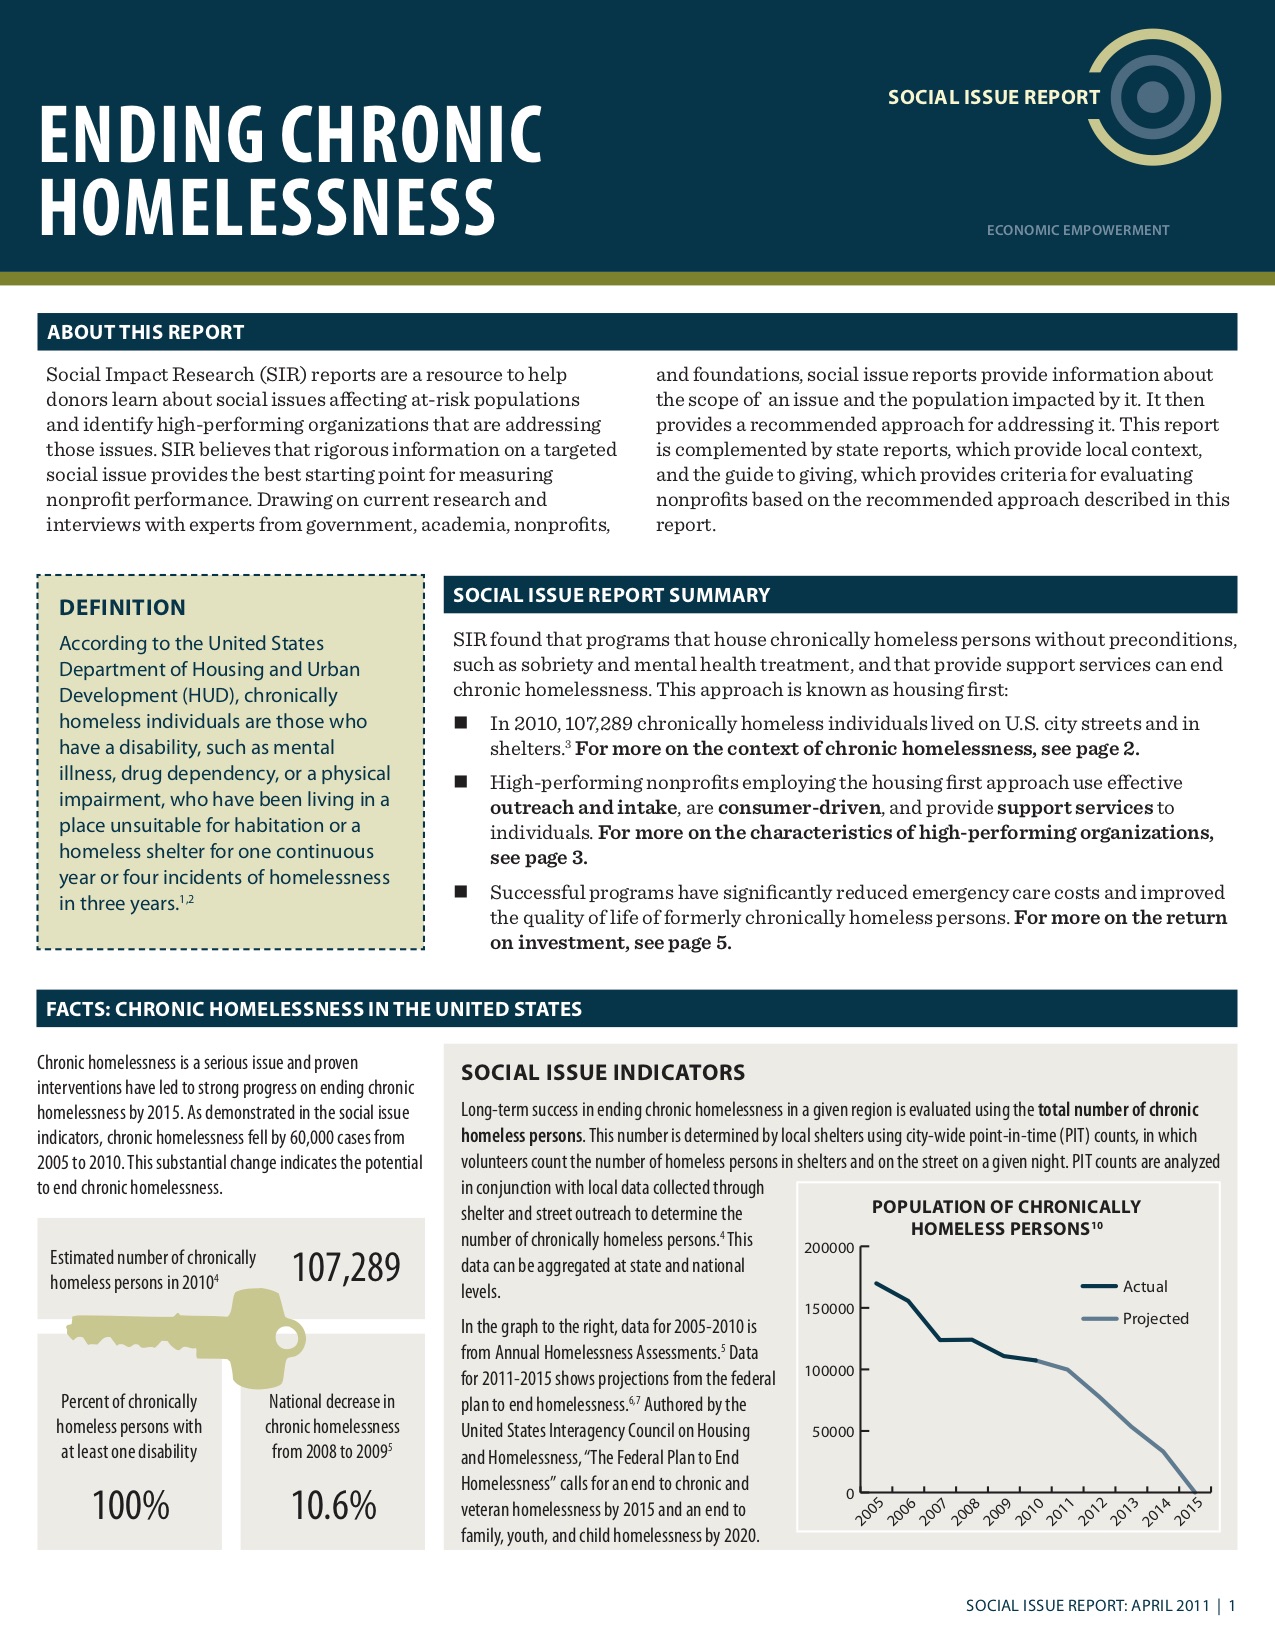 Ending Chronic Homelessness: Social Issue Report